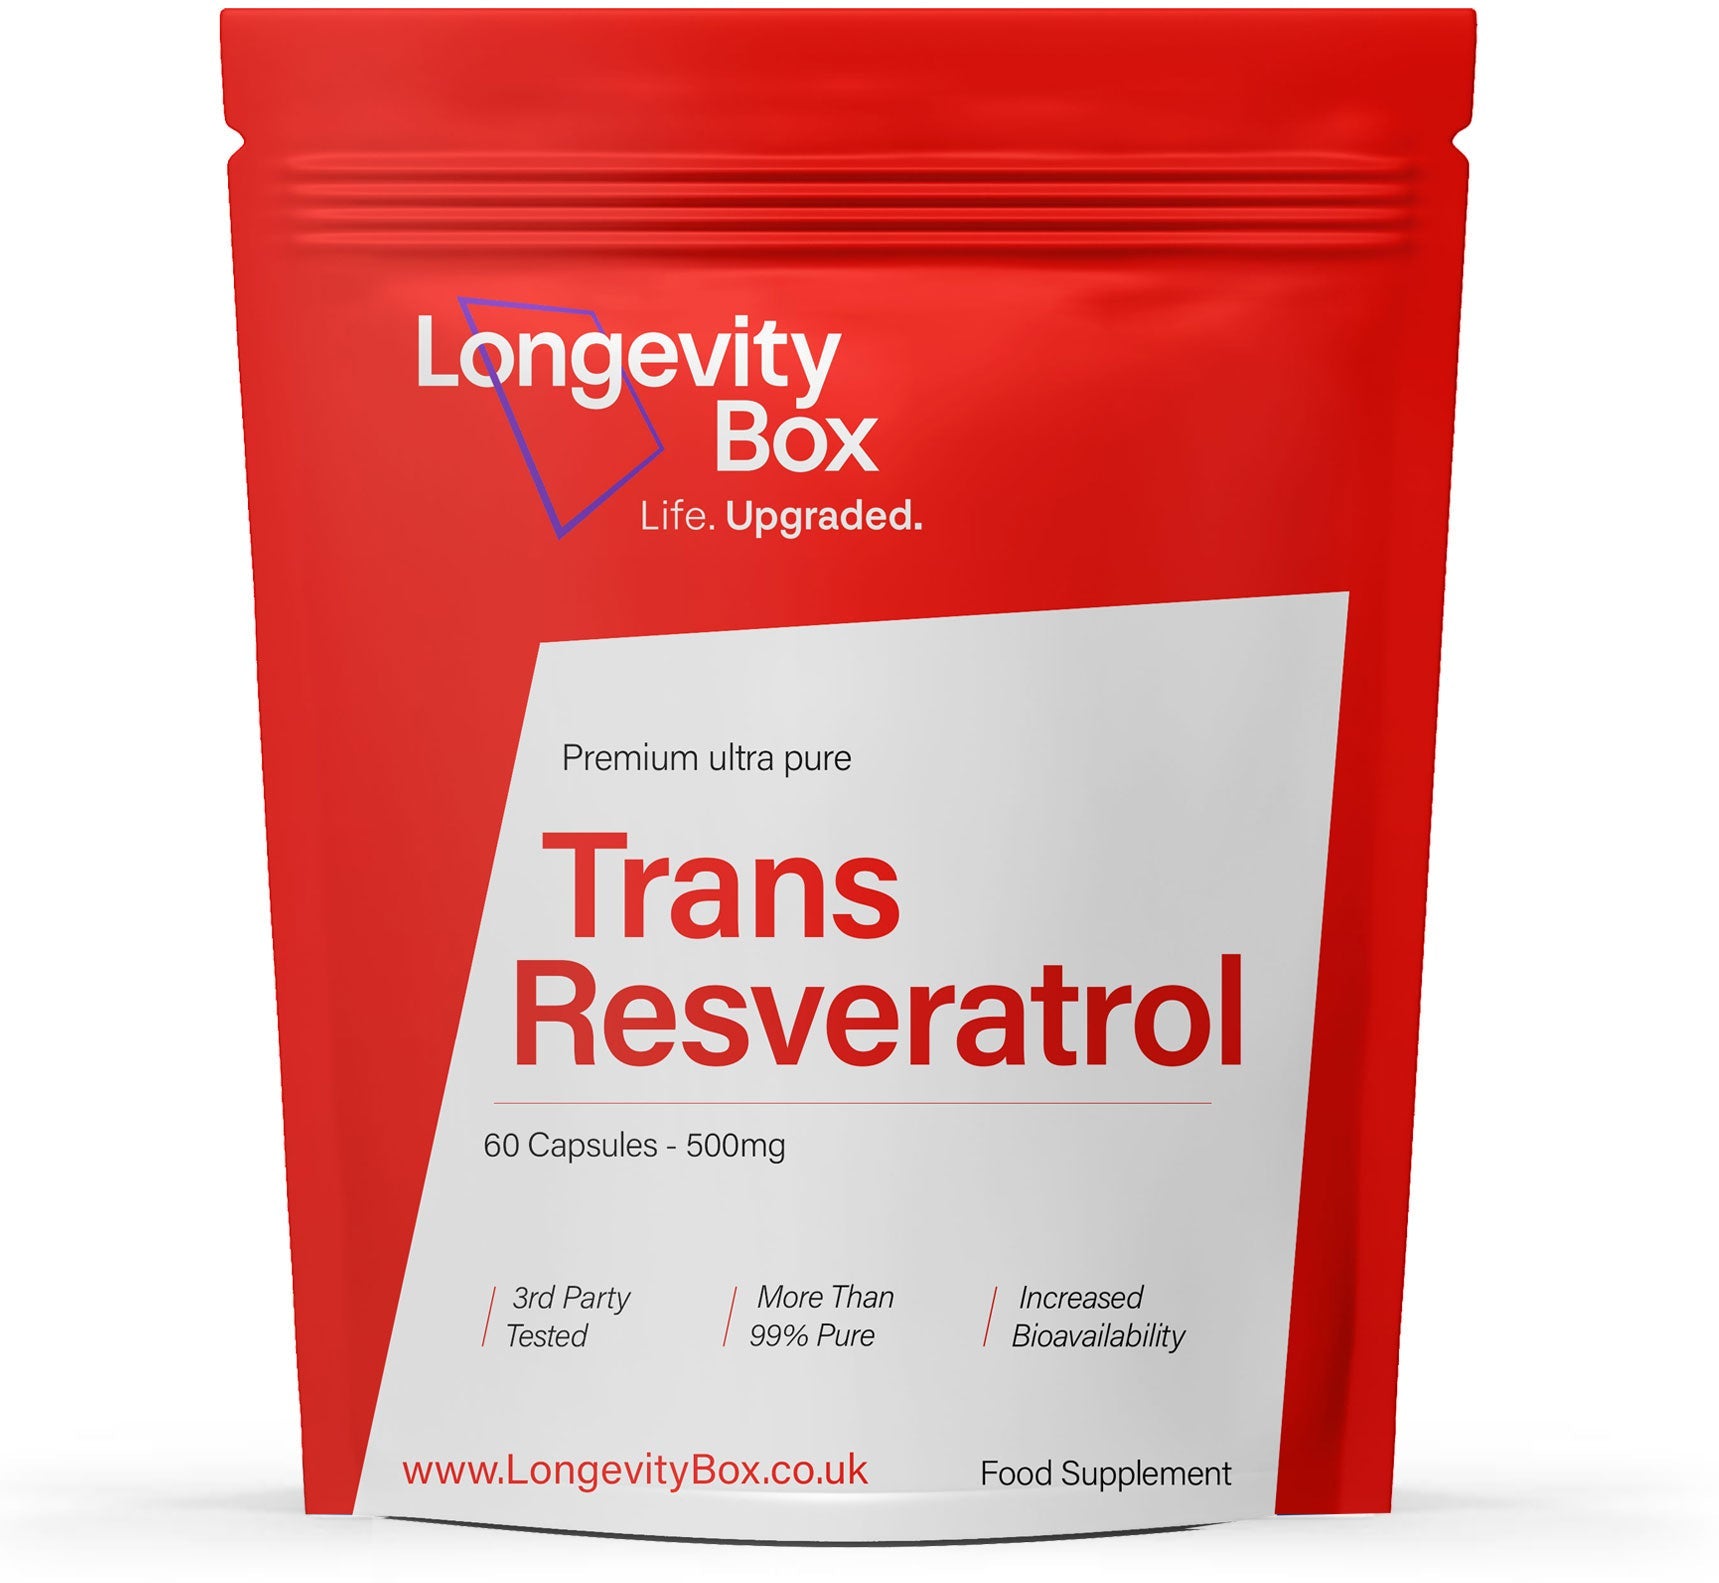 Best Sellers Bundle - Our top 5 Longevity supplements - Longevity Box